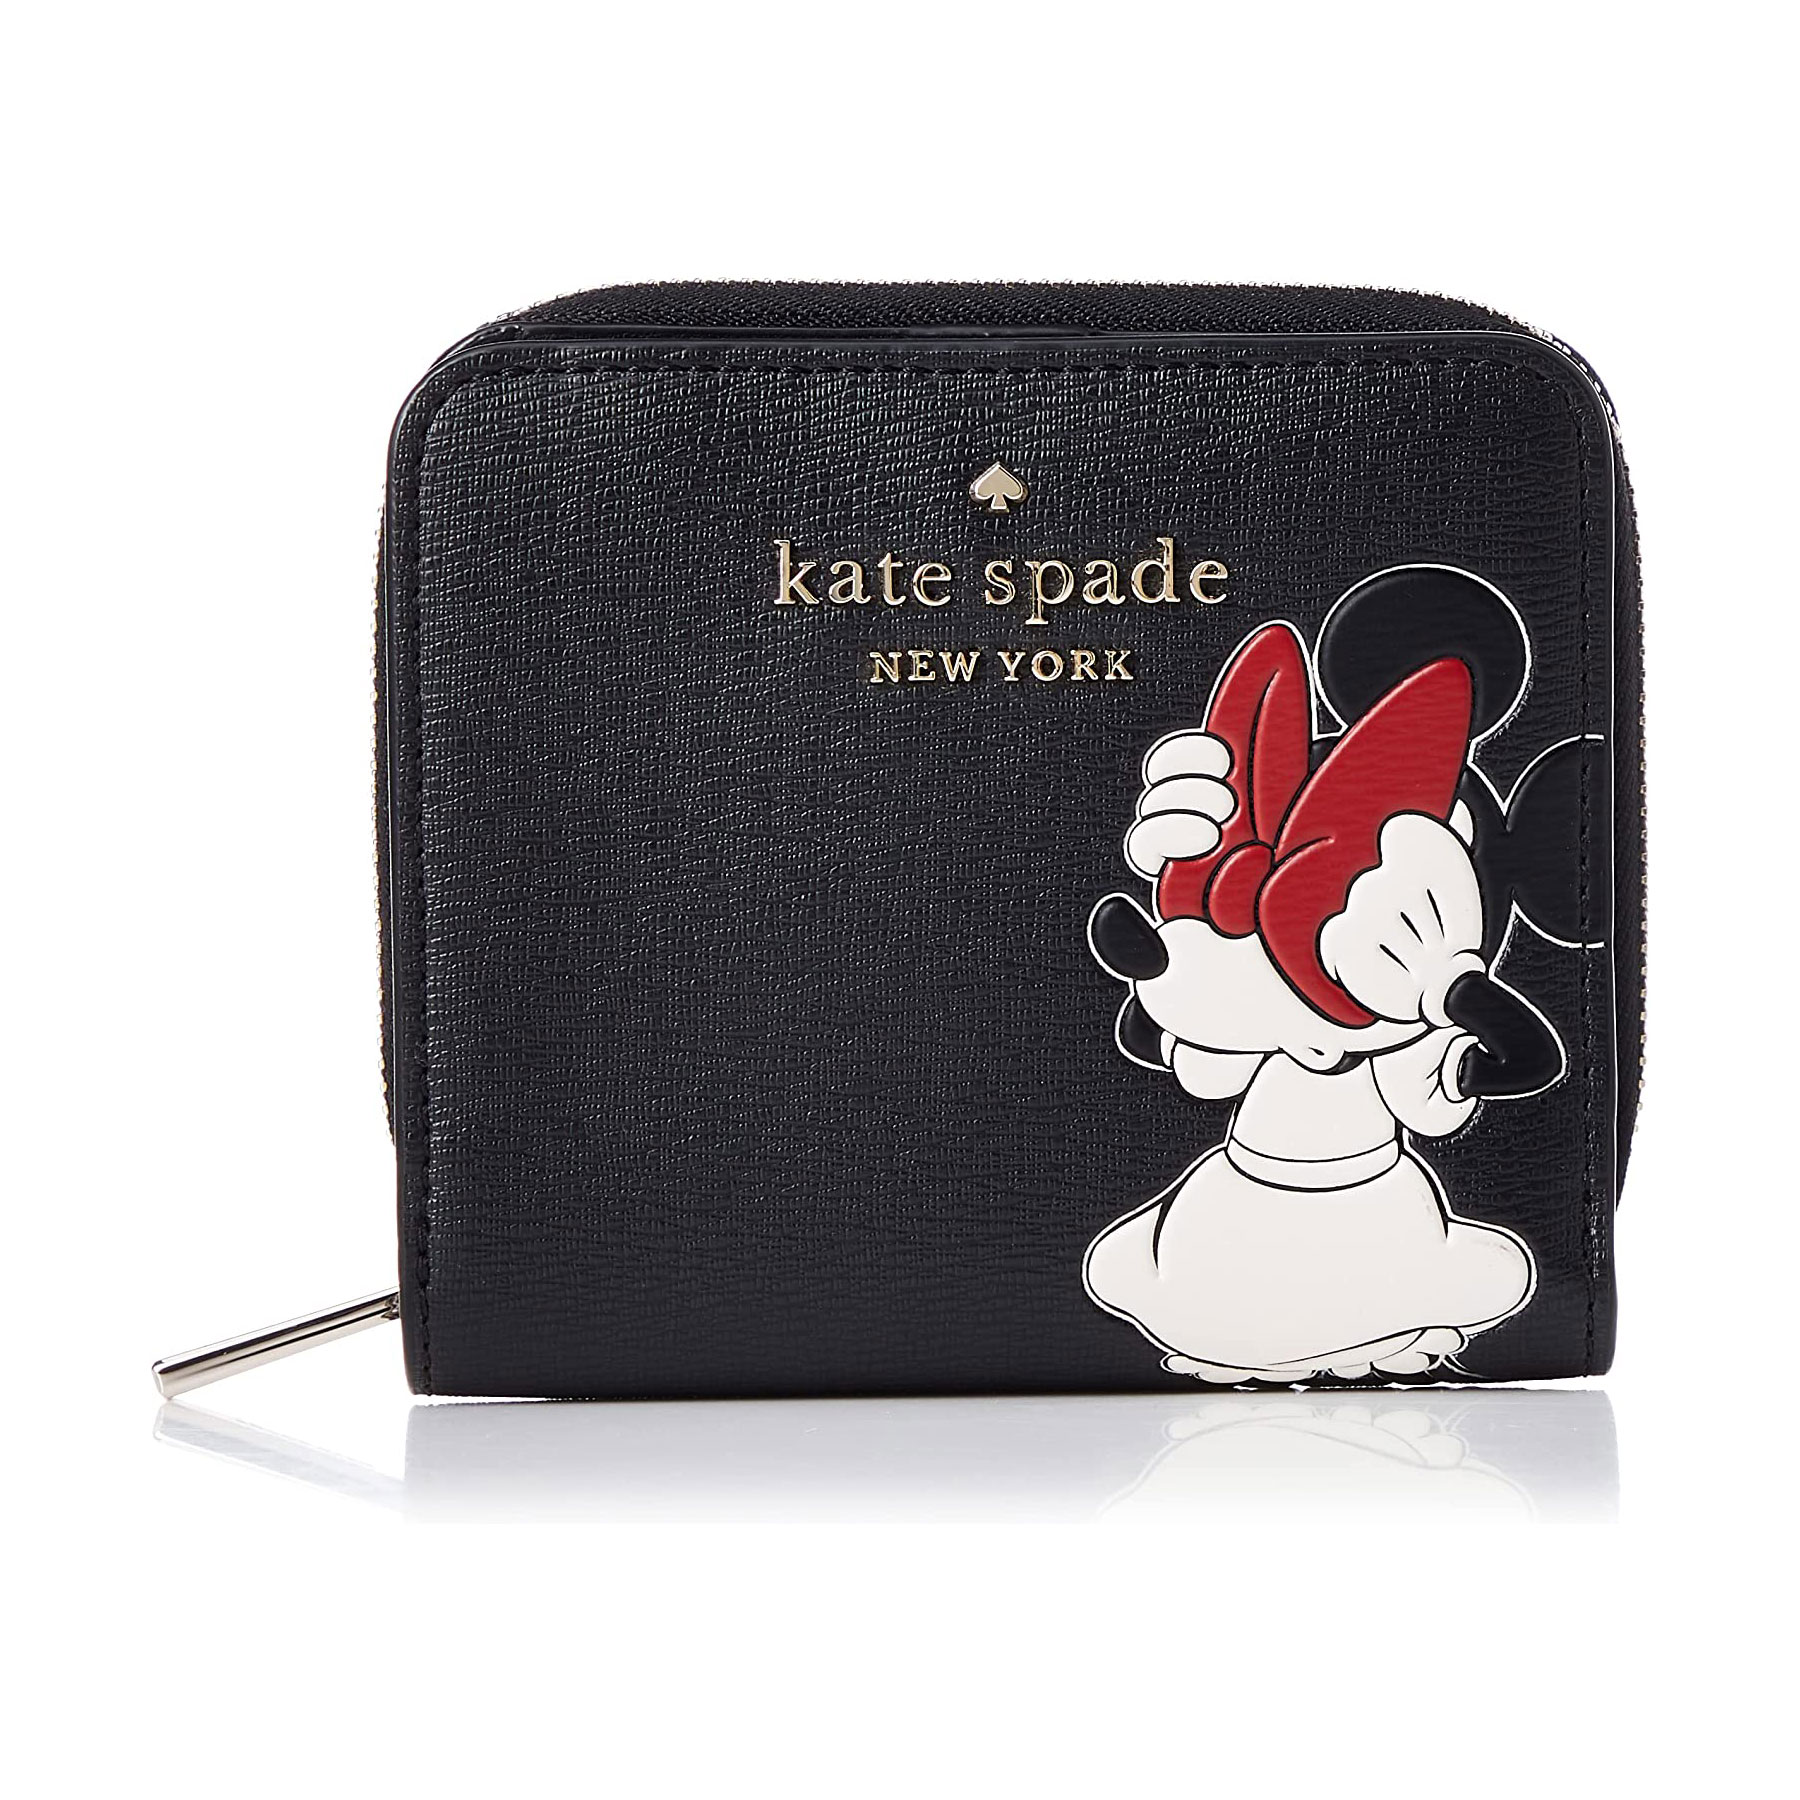 大人かわいい「kate spade（ケイトスペード）の財布」おすすめ6選 ...